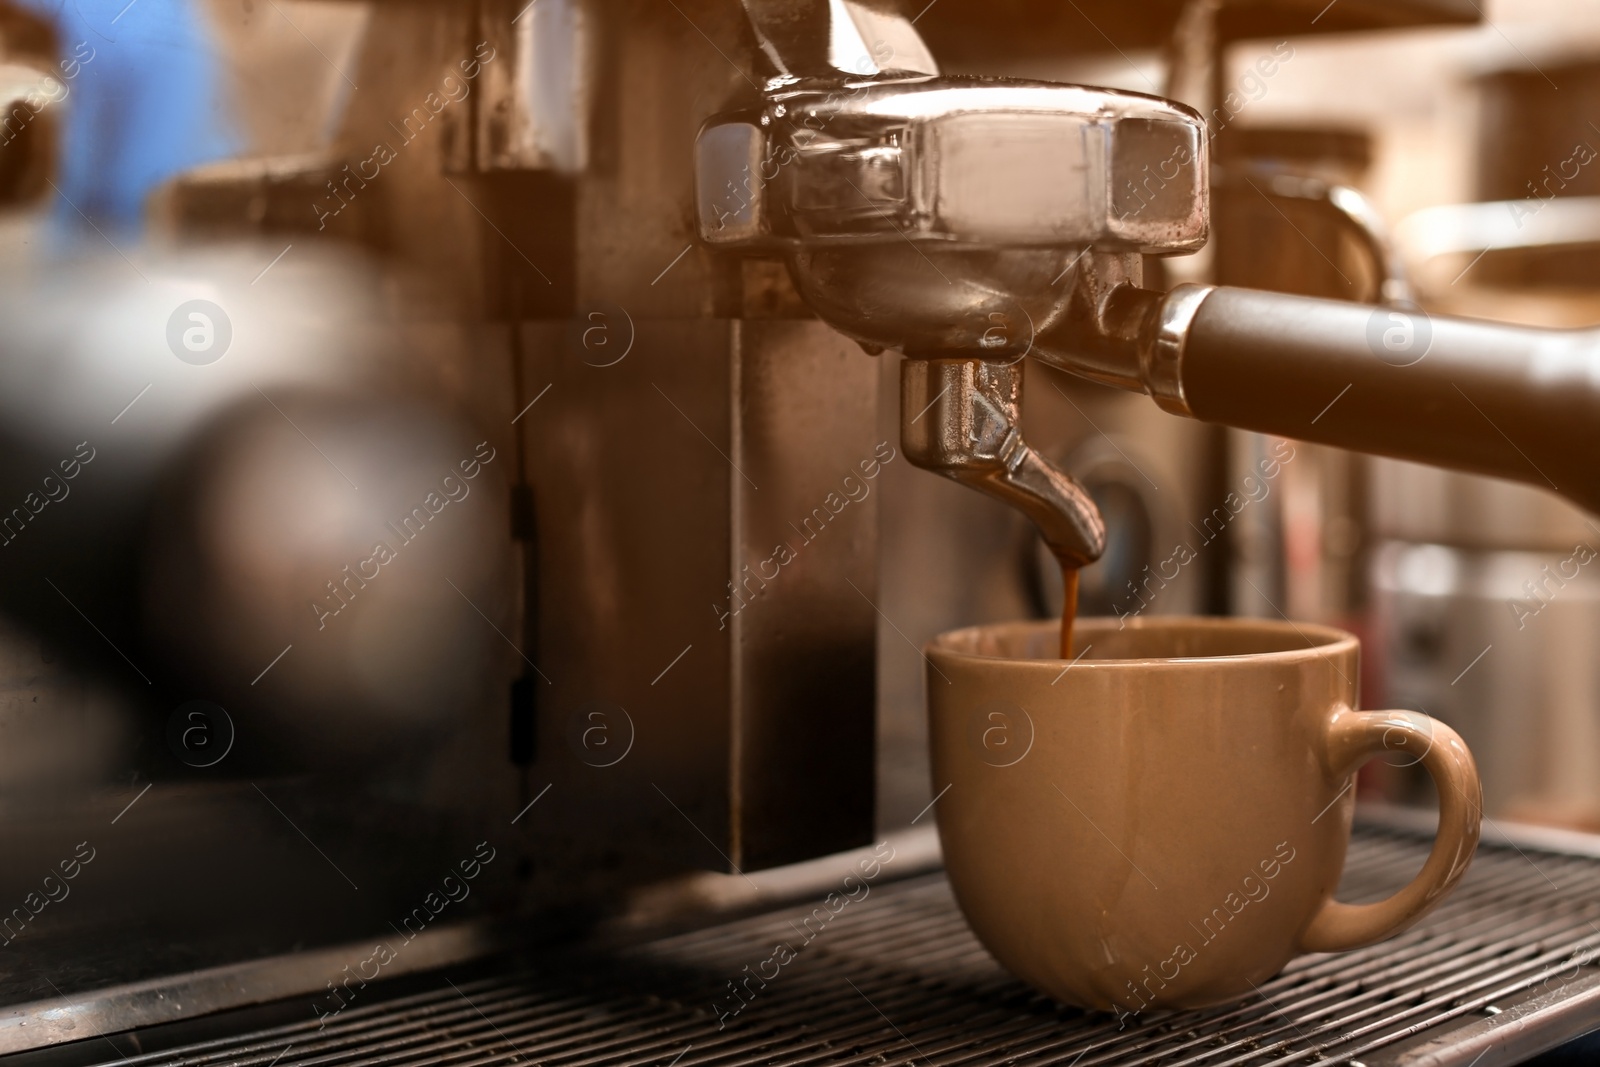 Photo of Preparing fresh aromatic coffee using modern machine, closeup